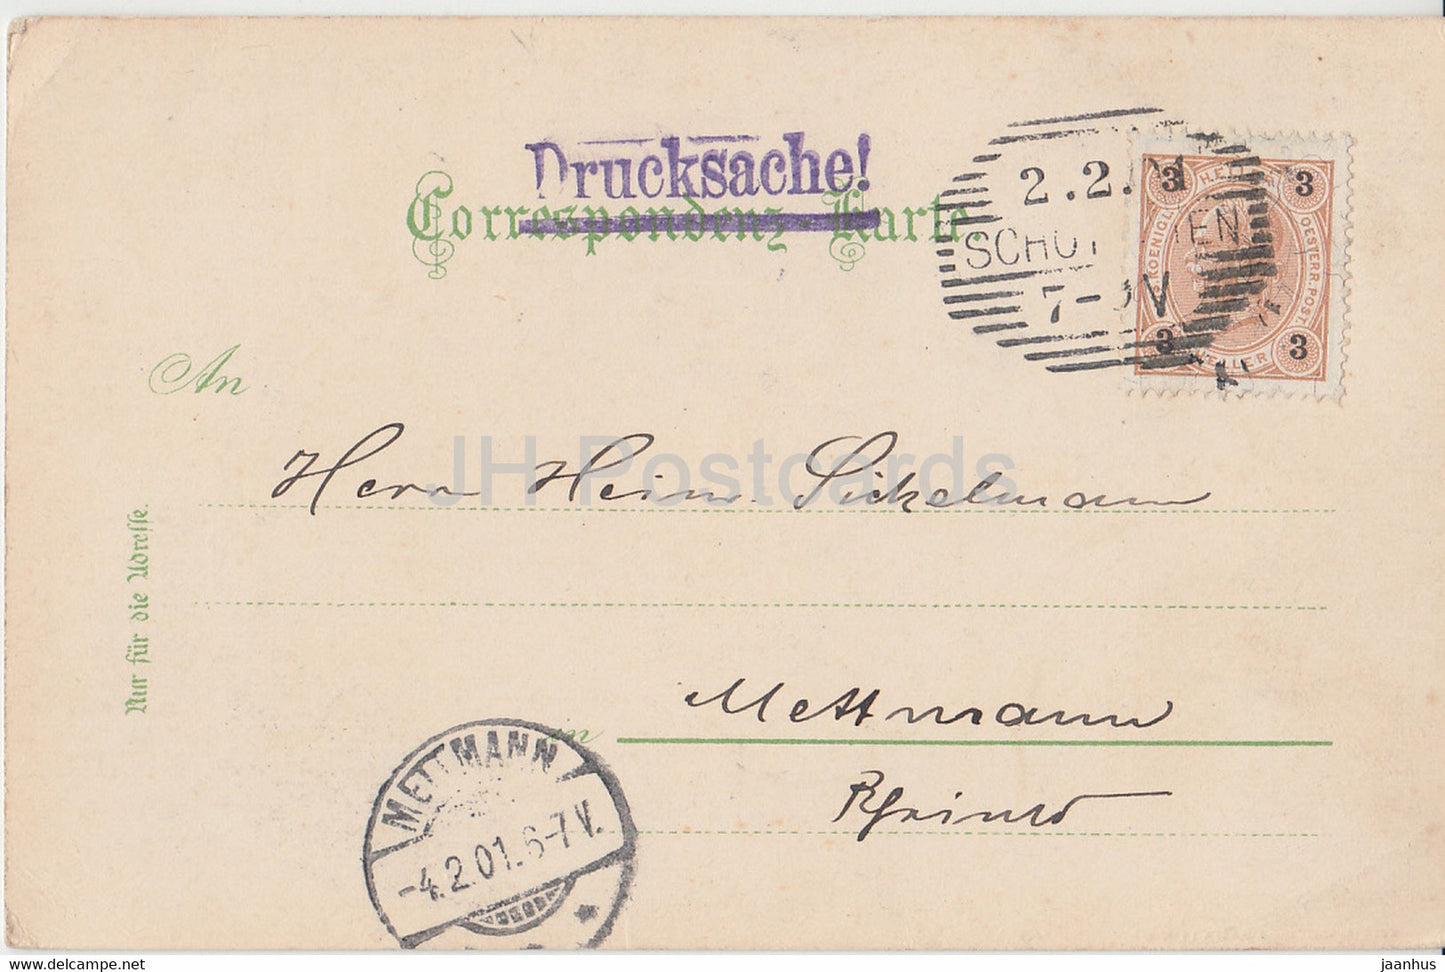 Gruss aus dem Semmering Gebiet - Der Jagergraben - Drucksache - carte postale ancienne - 1901 - Autriche - utilisé